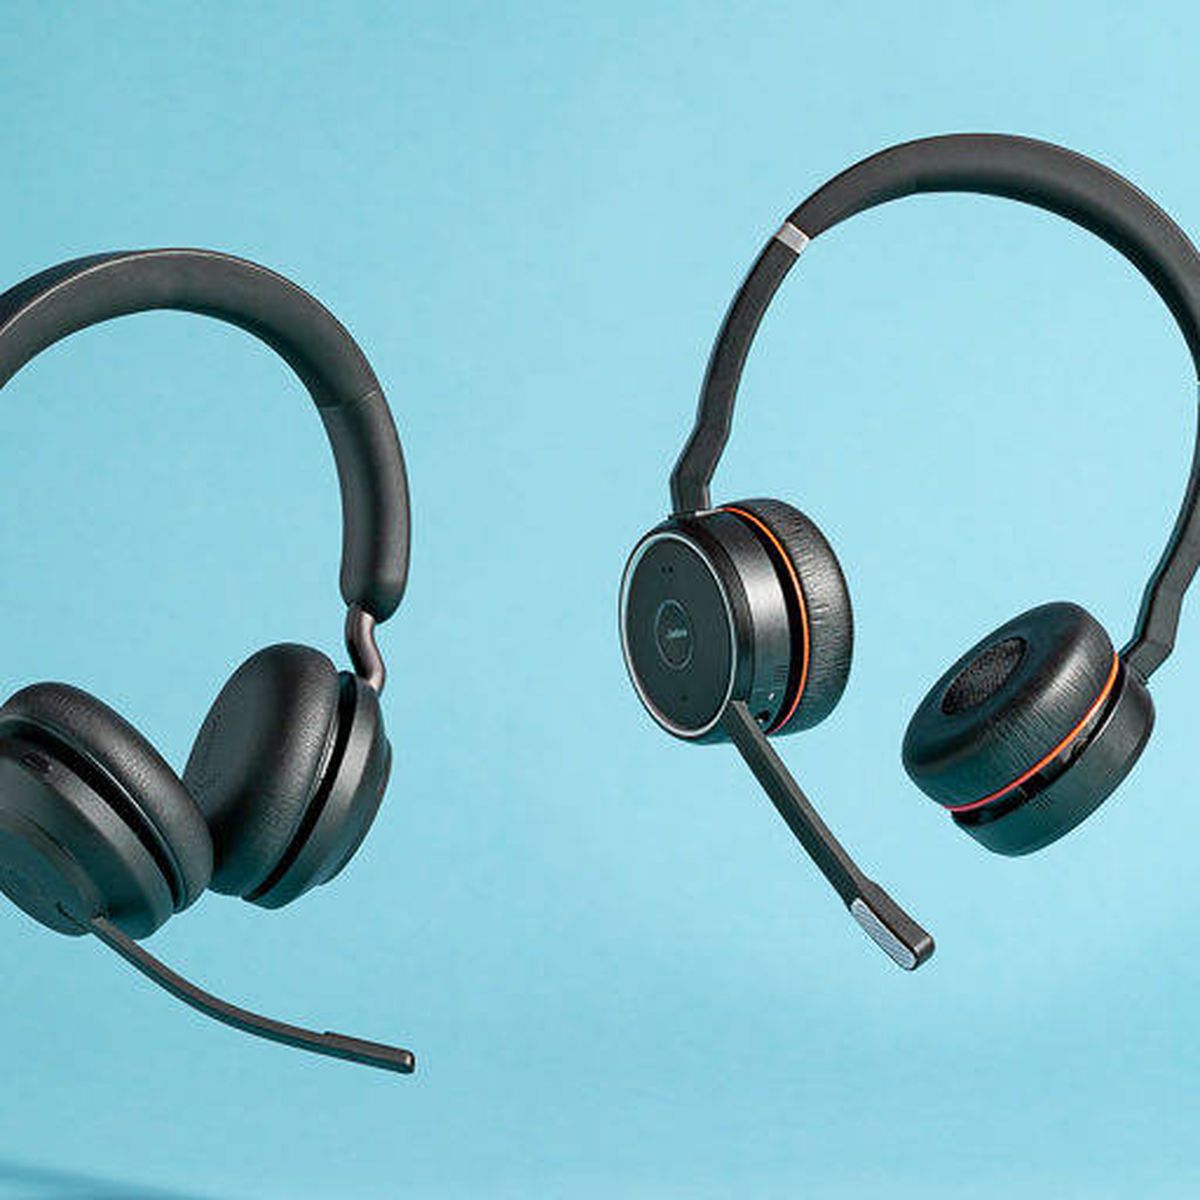 Por qué es mucho más cómodo usar auriculares con micrófono bluetooth?